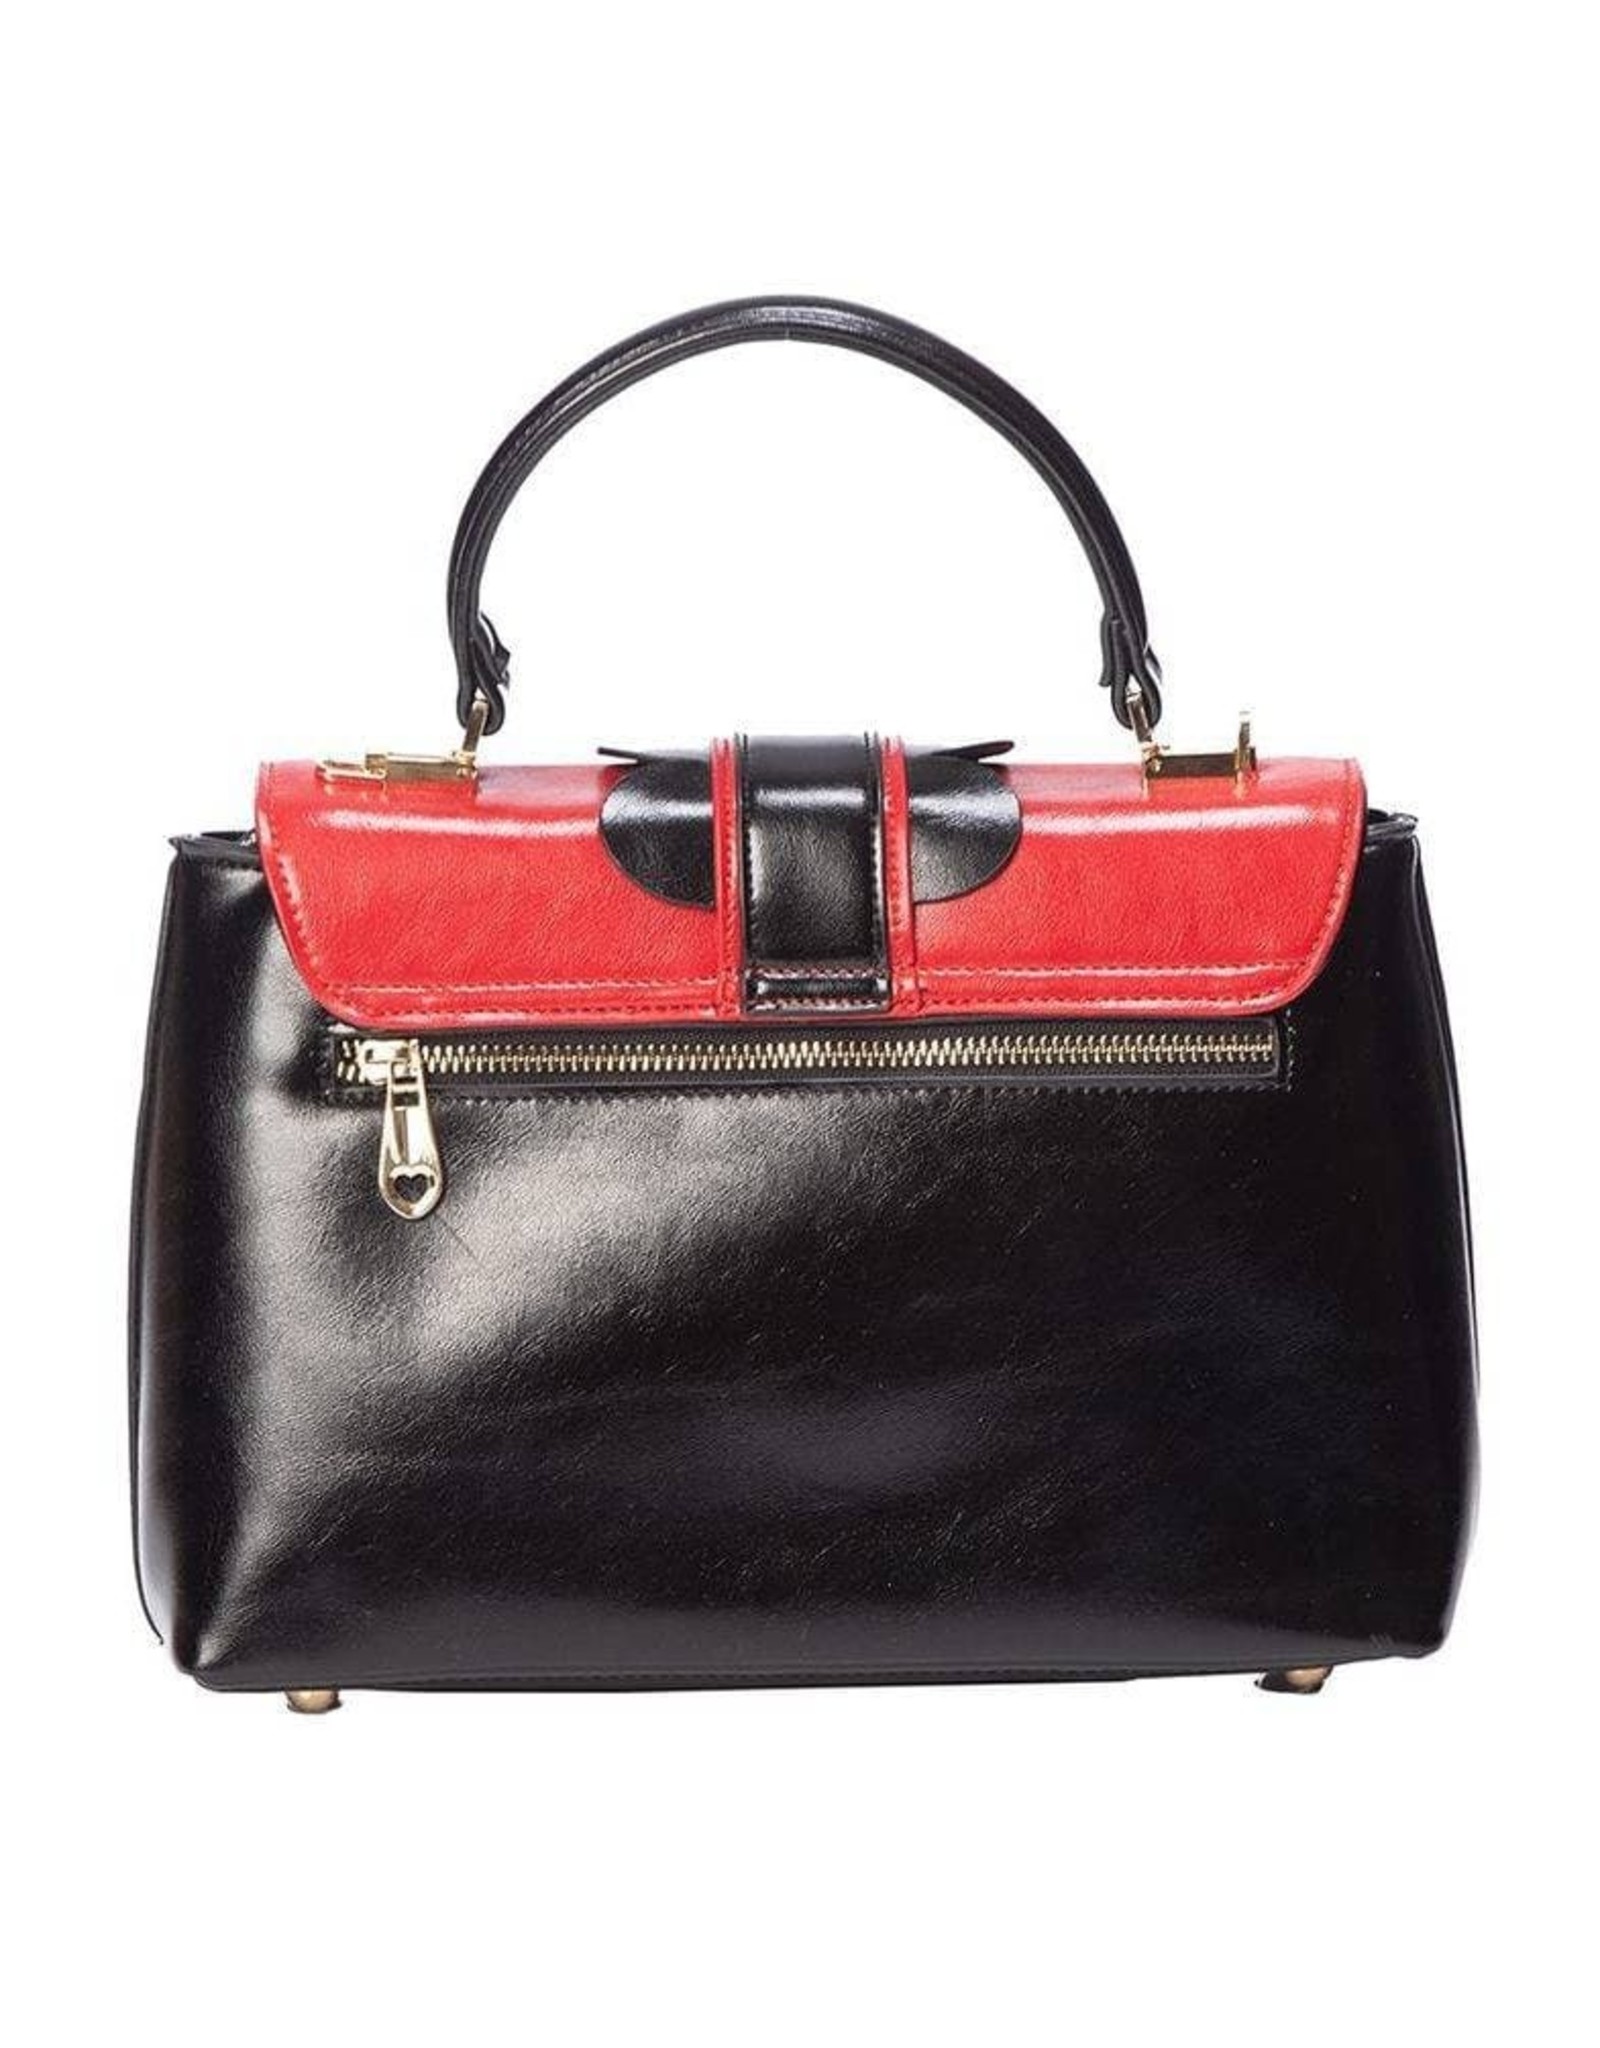 Banned Retro bags Vintage bags - Banned Retro handbag DEIDRA red/black